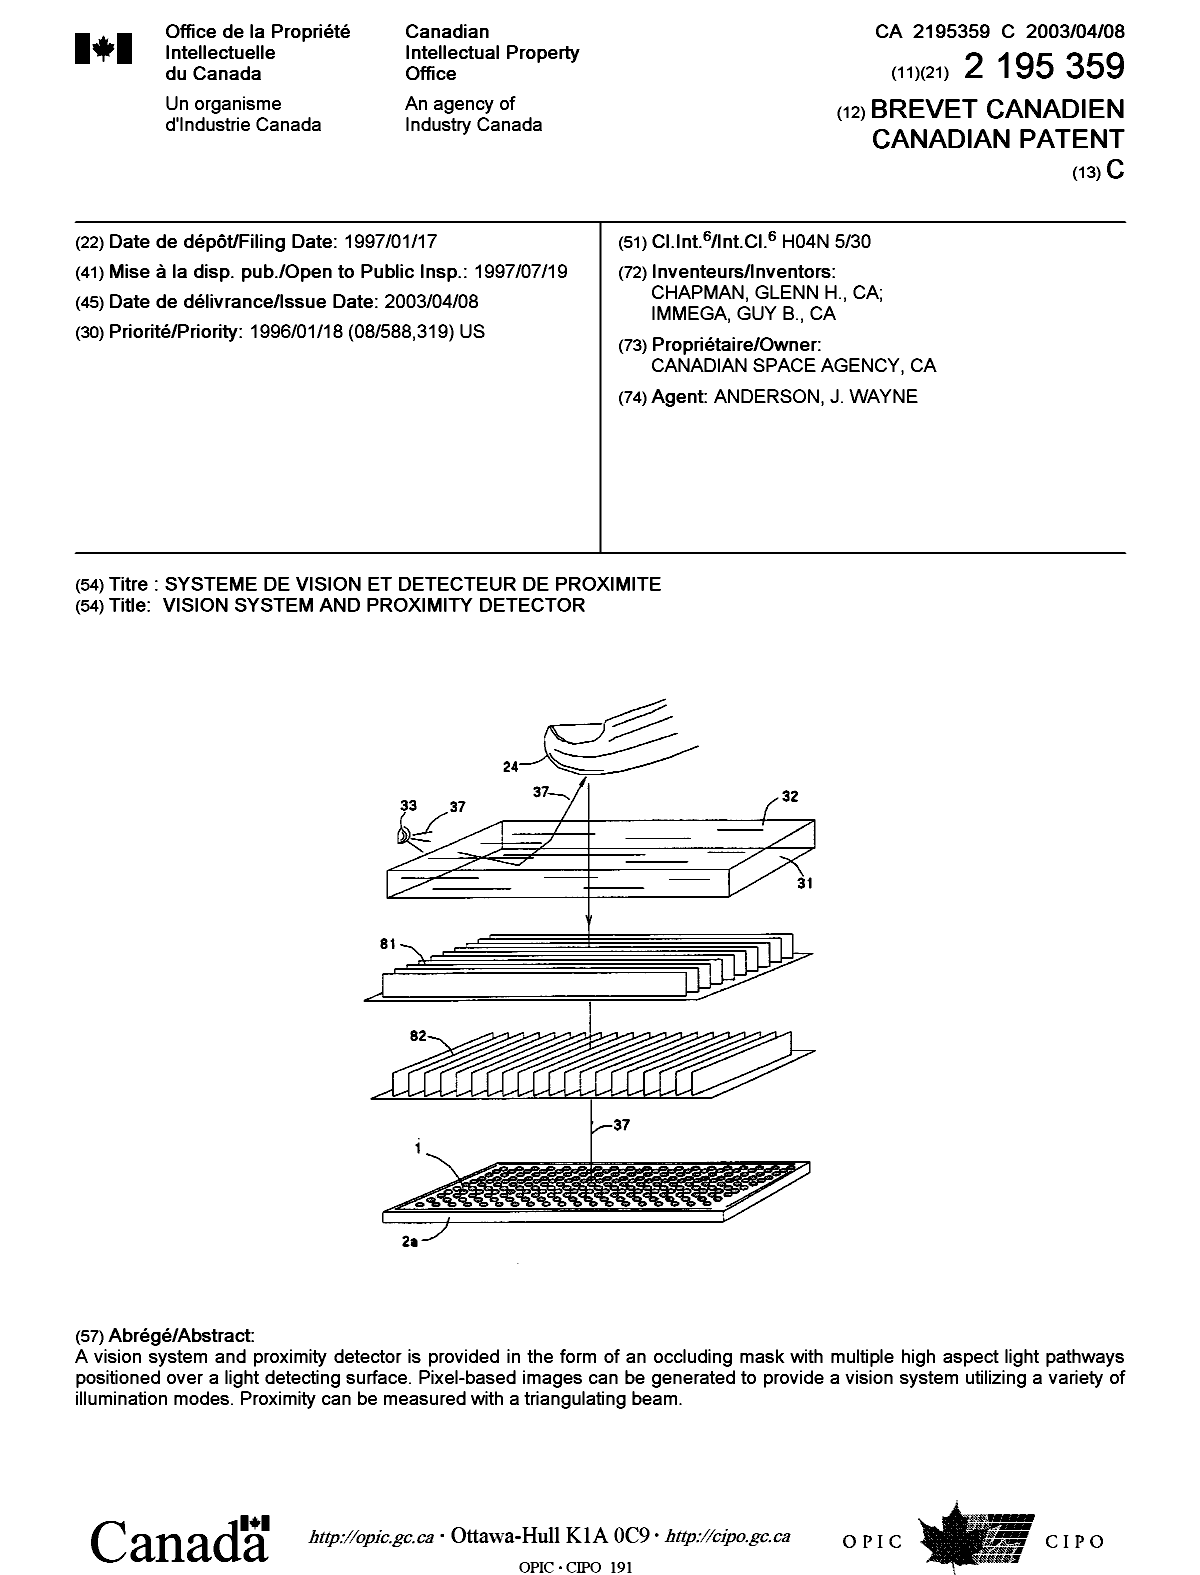 Document de brevet canadien 2195359. Page couverture 20030305. Image 1 de 1